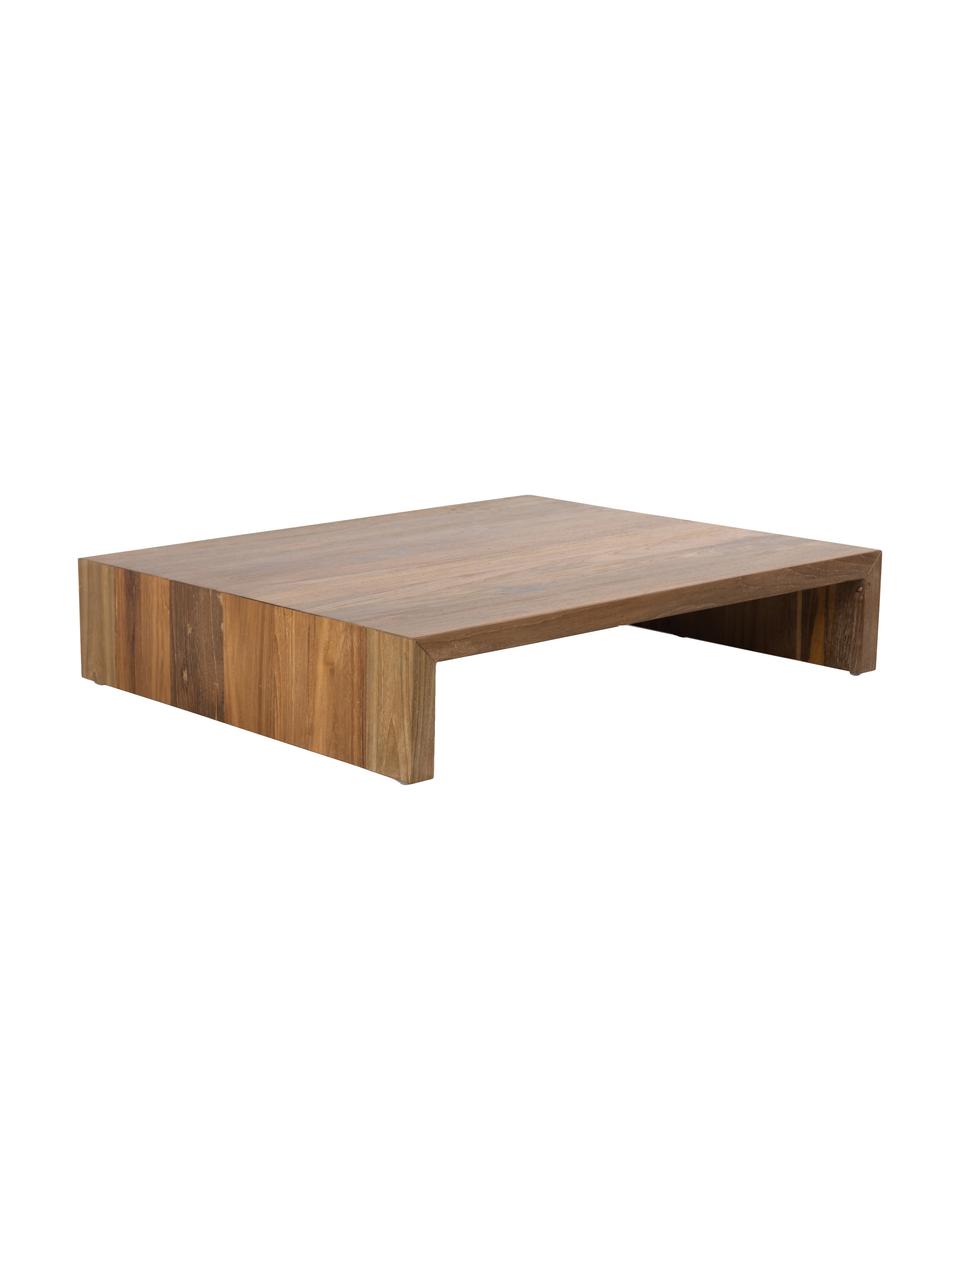 Konferenčný stolík z dreva Sungkai, Drevo sungkai
Keďže ide o prírodné materiály, výrobok sa môže líšiť od obrázkov. Každý kus je jedinečný!, Drevo sungkai, Š 62 x H 53 cm